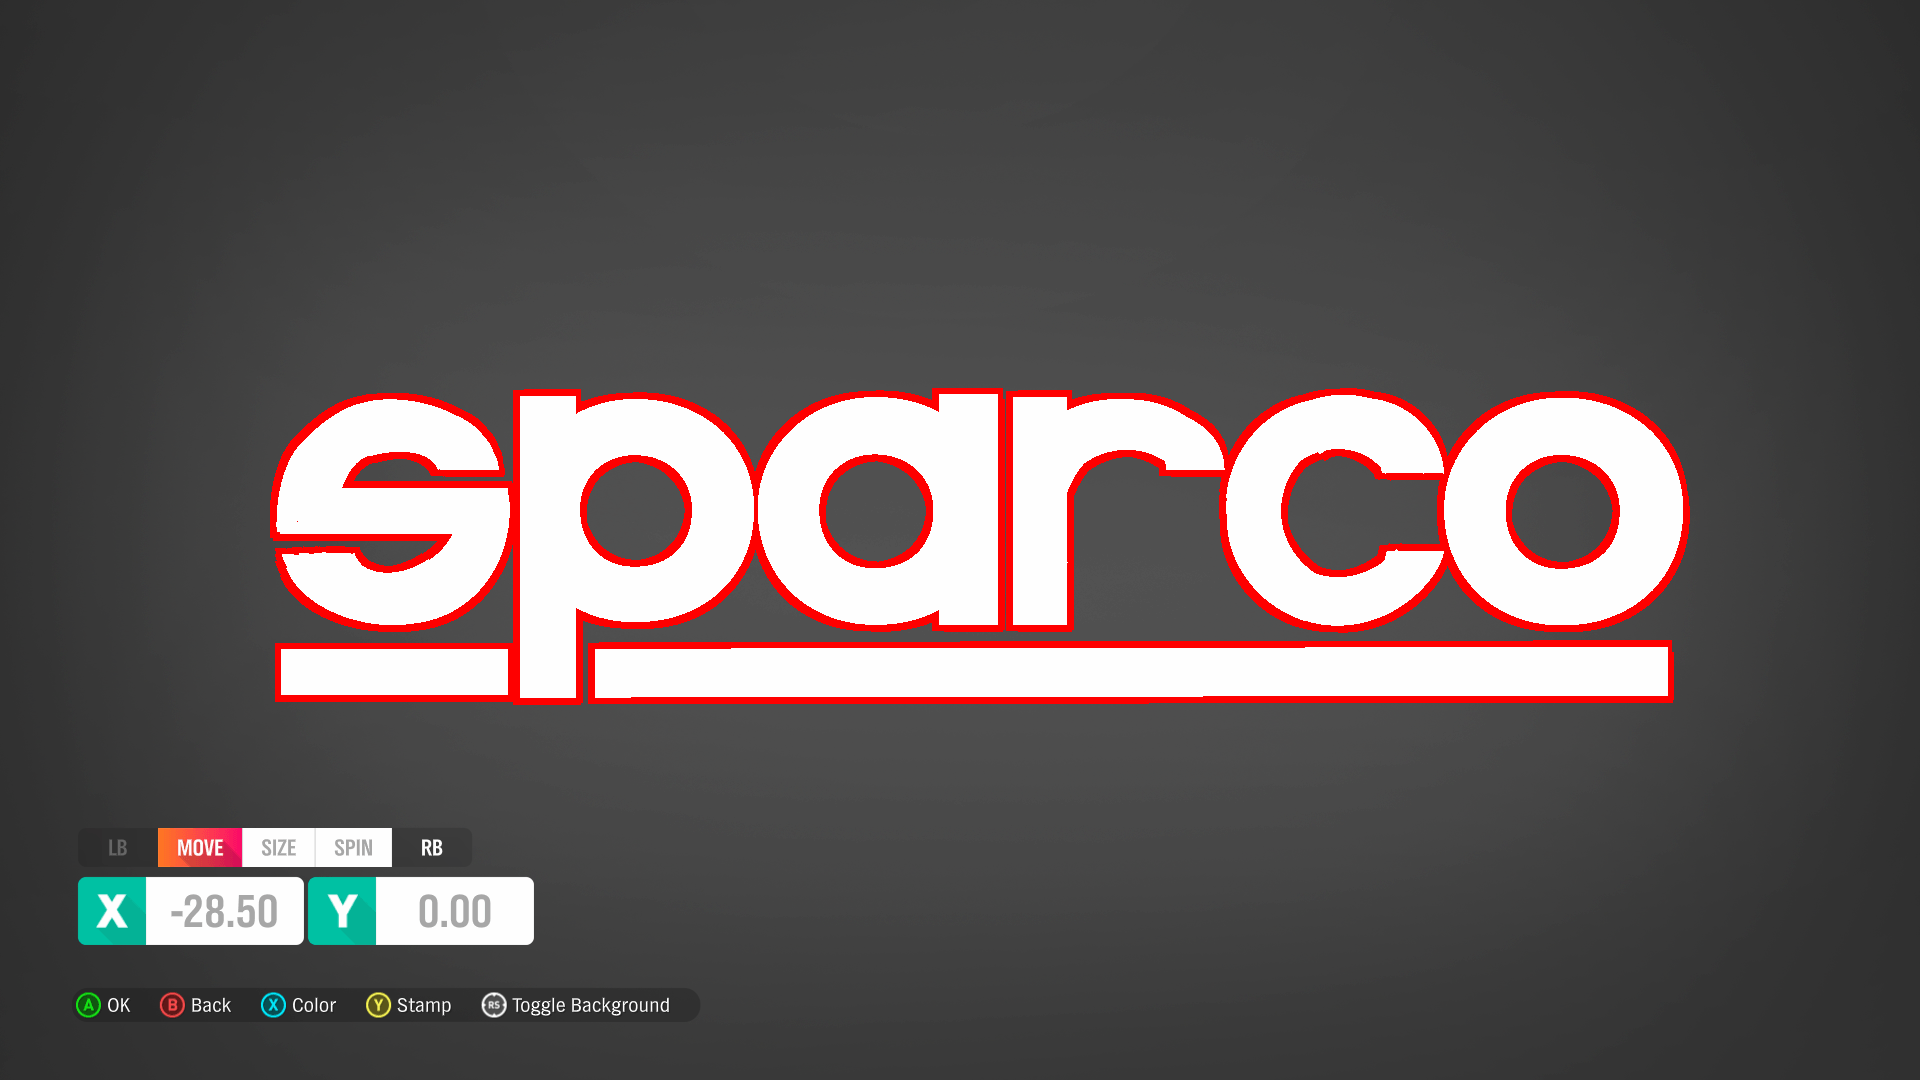 Sparco Logo - Sparco